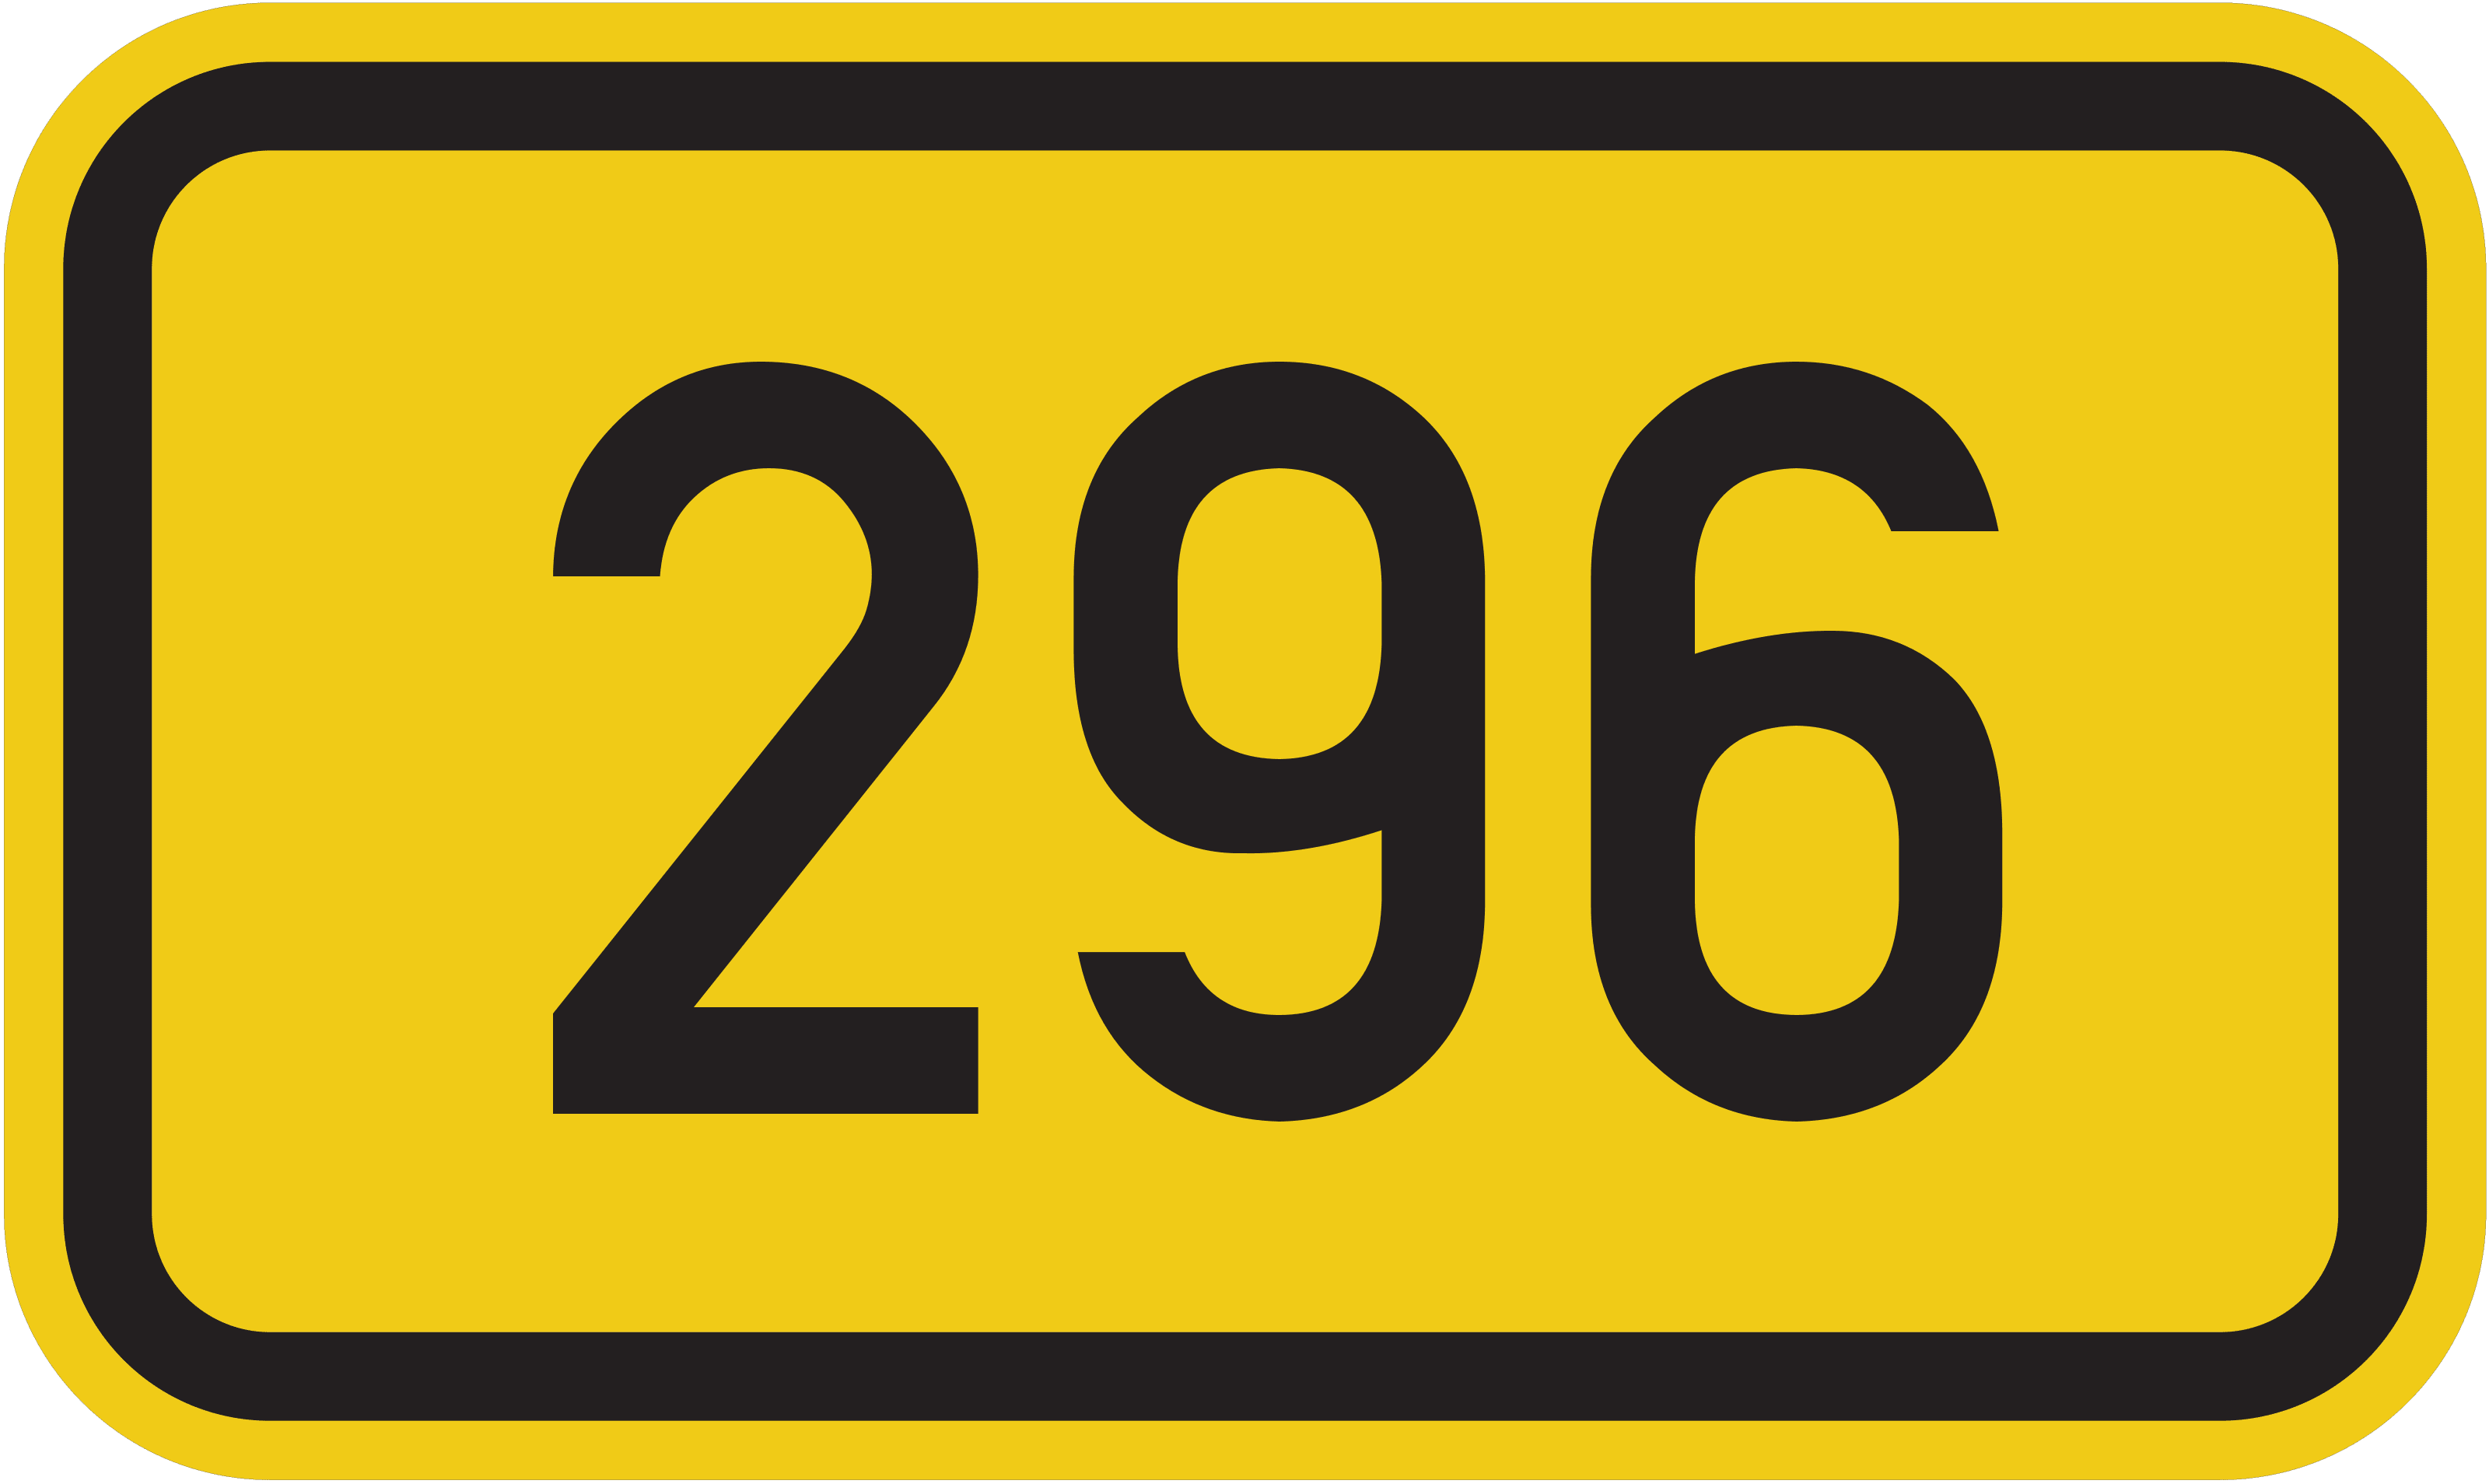 Bundesstraße B 296